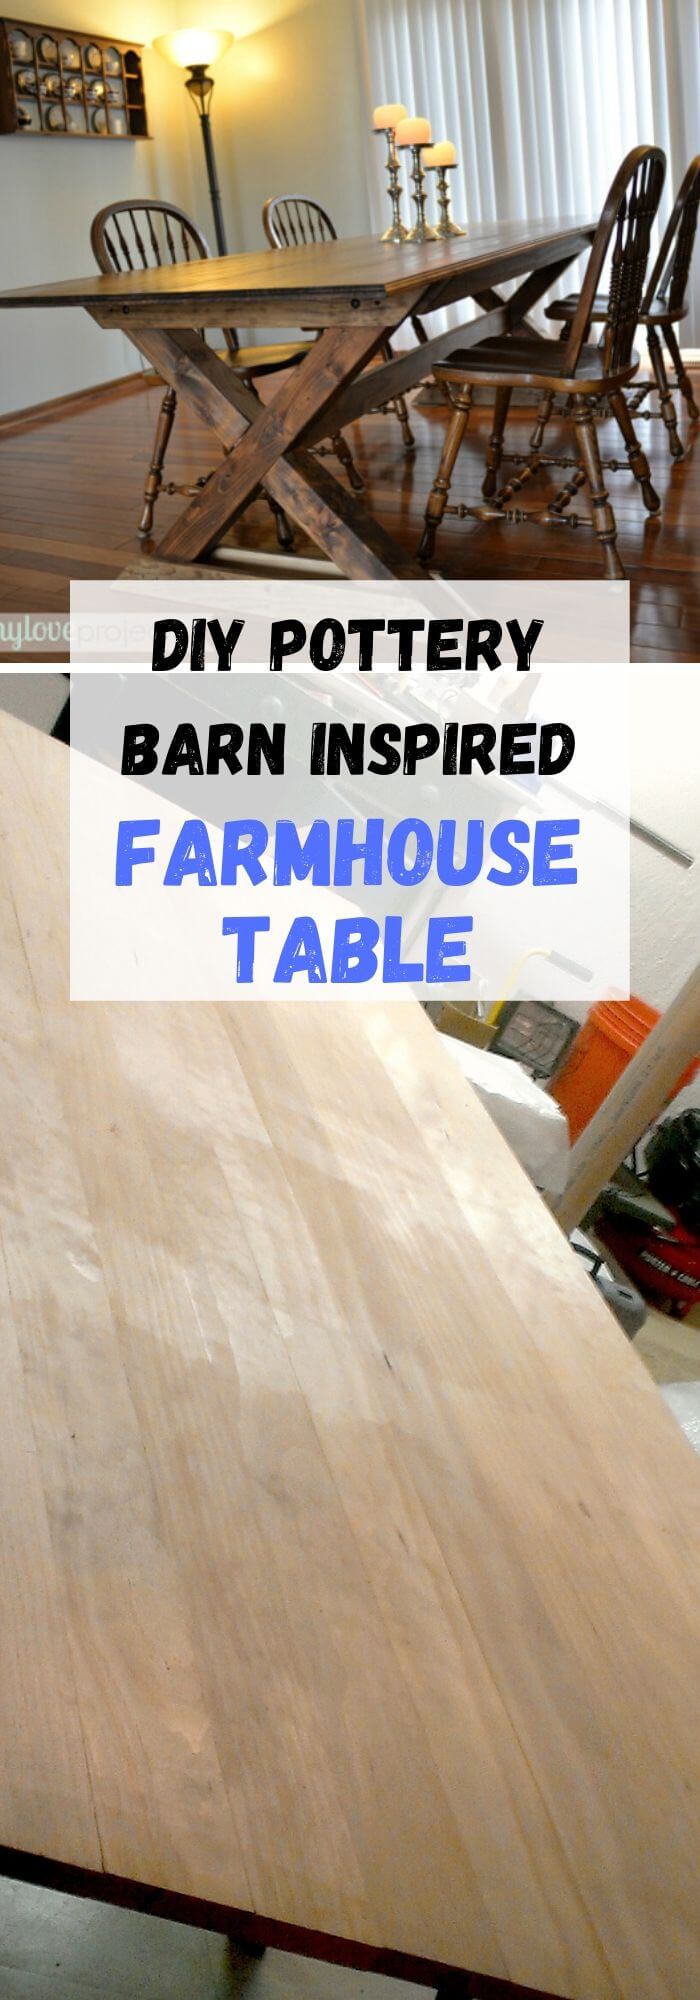 16 farmhouse table ideas